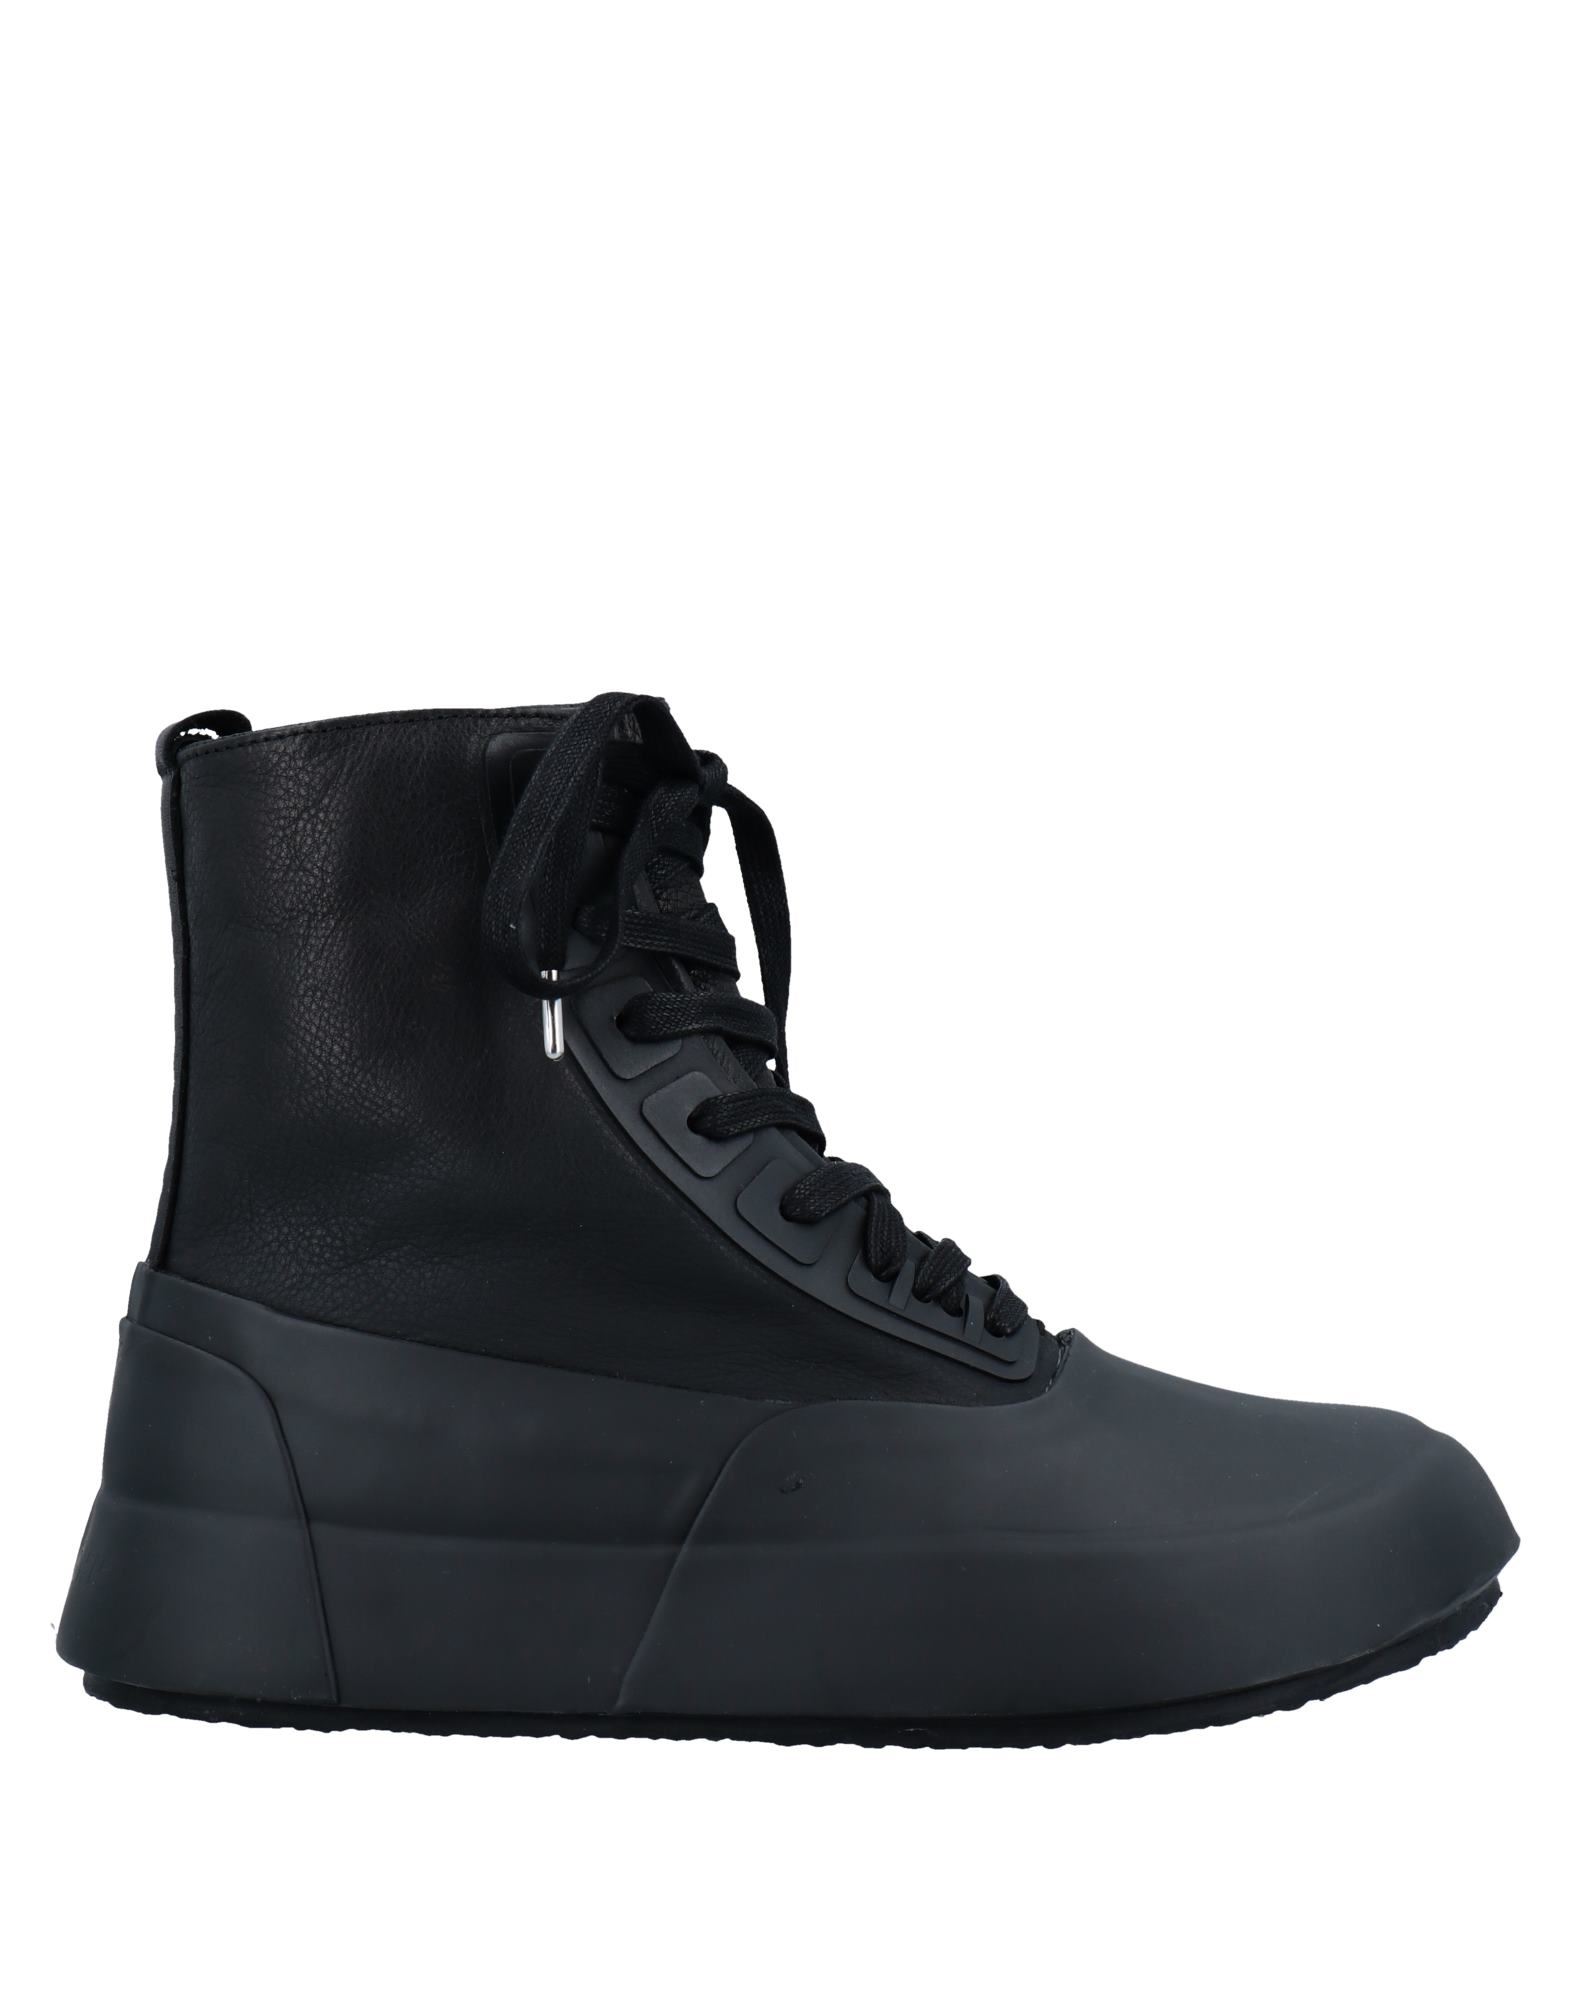 Shop Ambush Man Ankle Boots Black Size 9 Soft Leather, Rubber